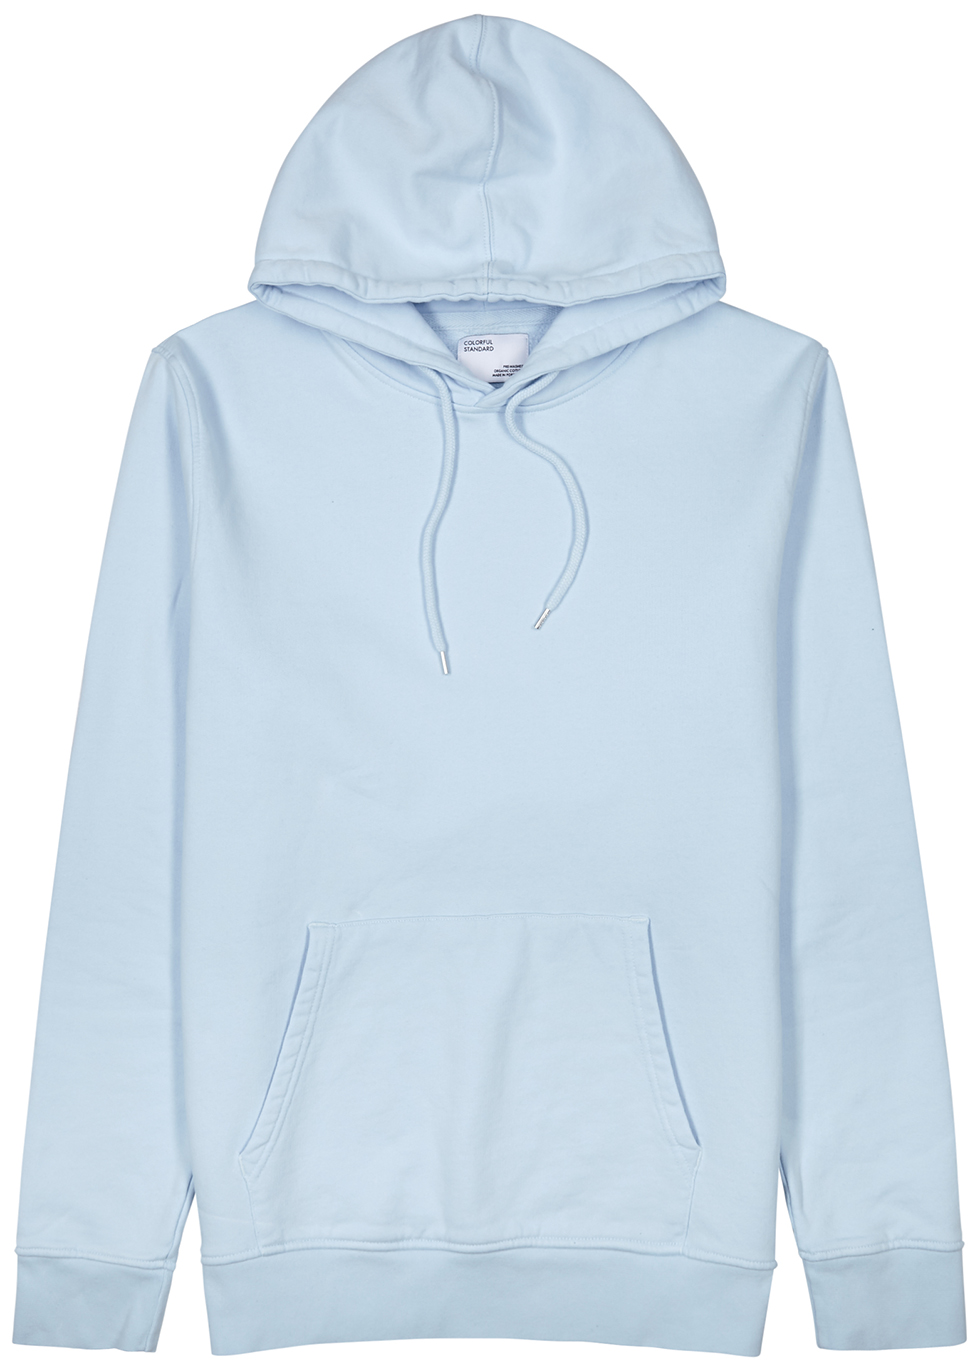 a blue hoodie